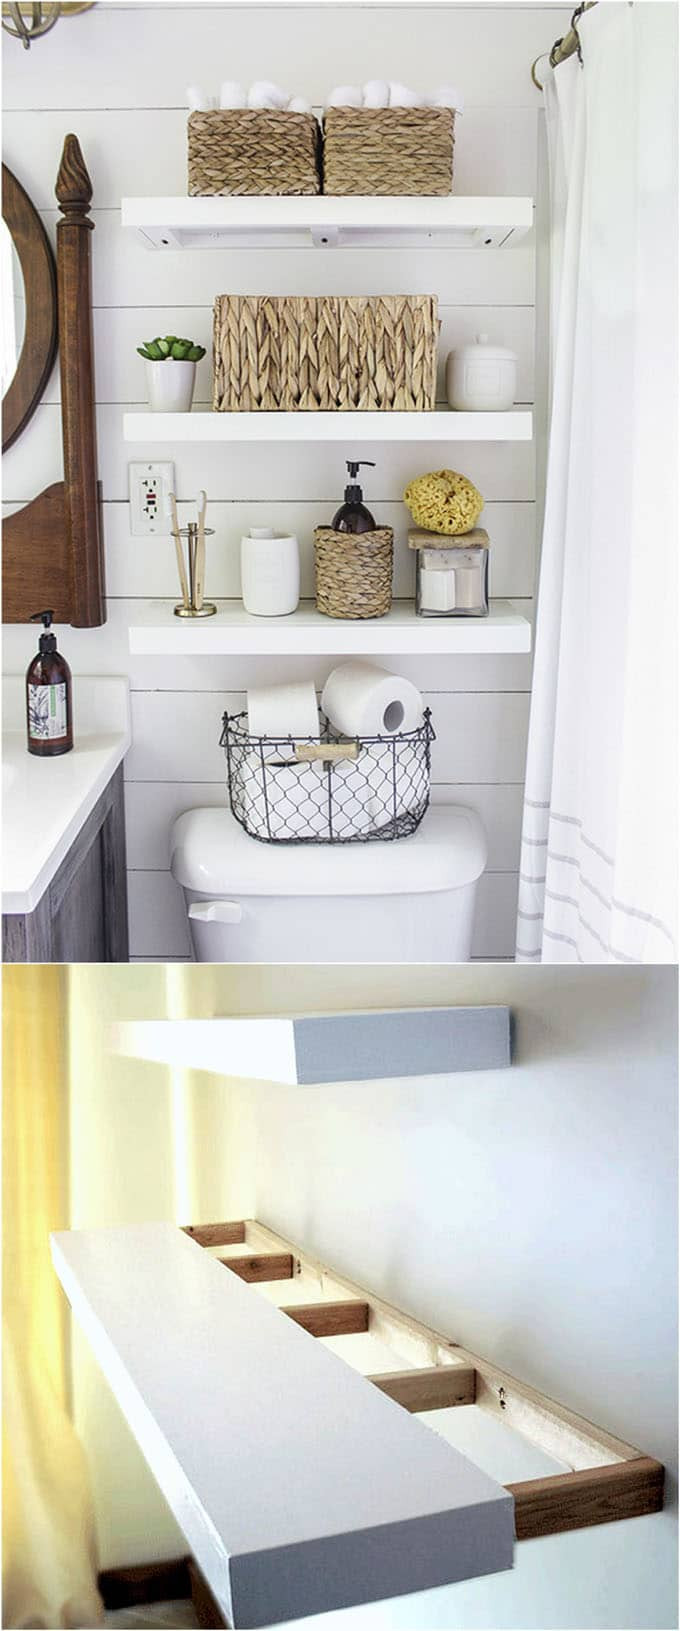 Bathroom Wall Shelves Ideas
 16 Easy and Stylish DIY Floating Shelves & Wall Shelves